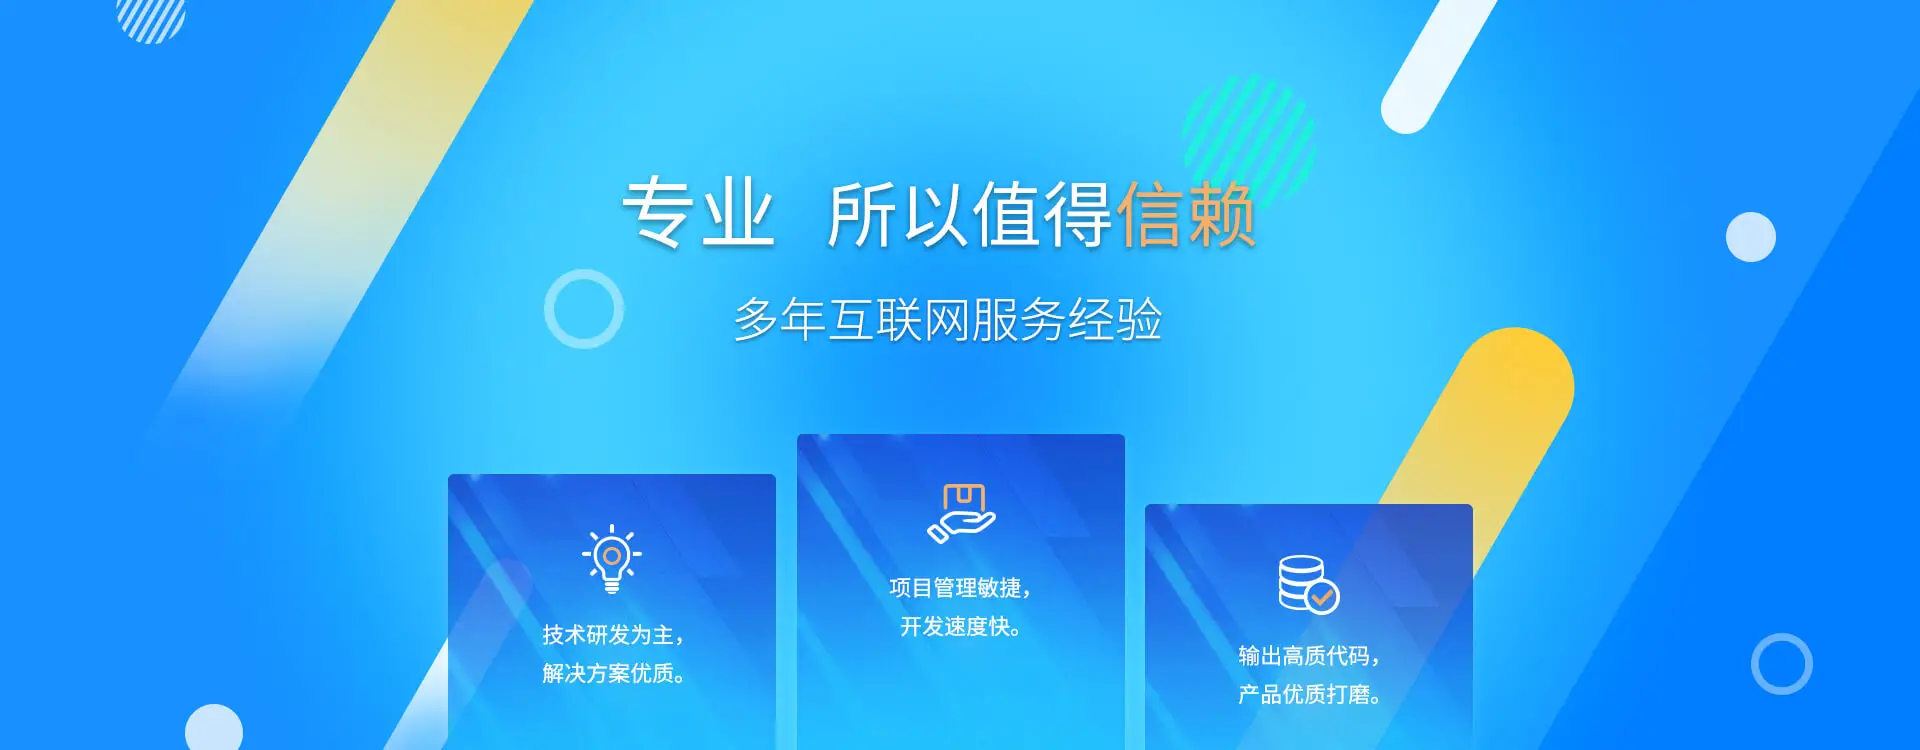 软件开发,上海软件开发,软件定制开发,小程序开发,上海软件开发公司